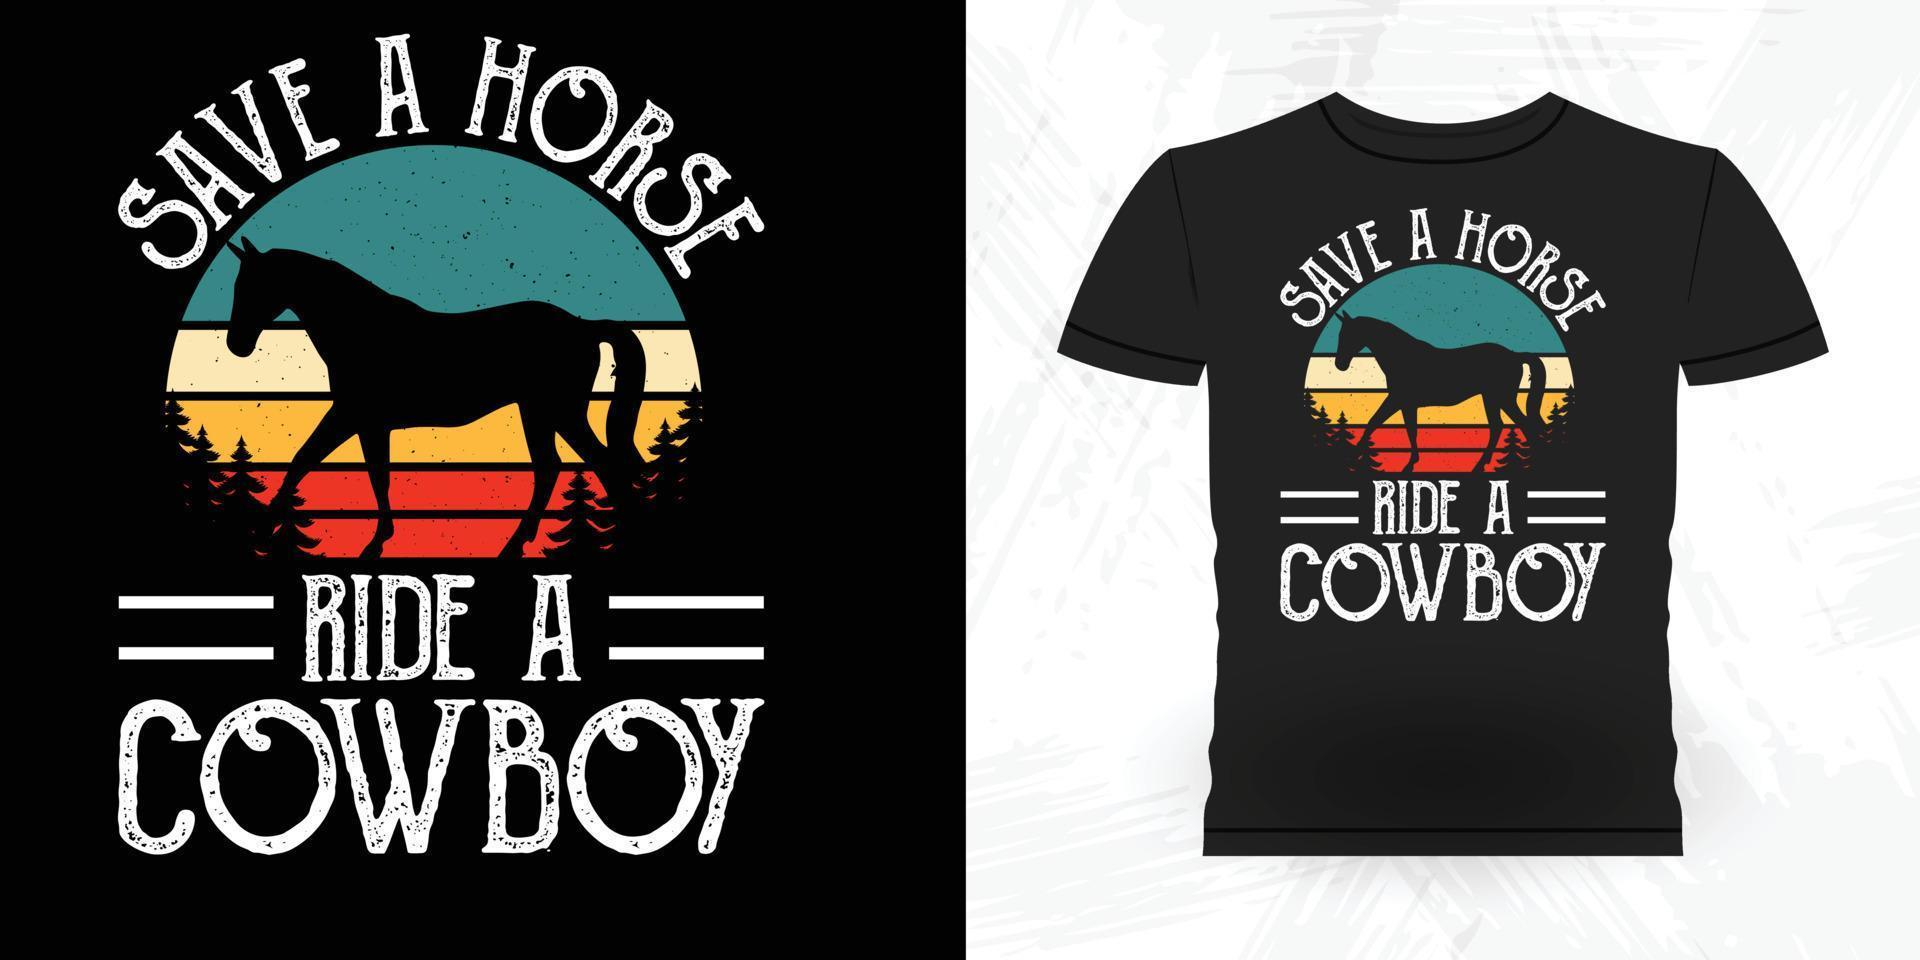 Save A Horse Ride A Cowboy Funny Riding Horse Retro Vintage Horse T-shirt Design vector